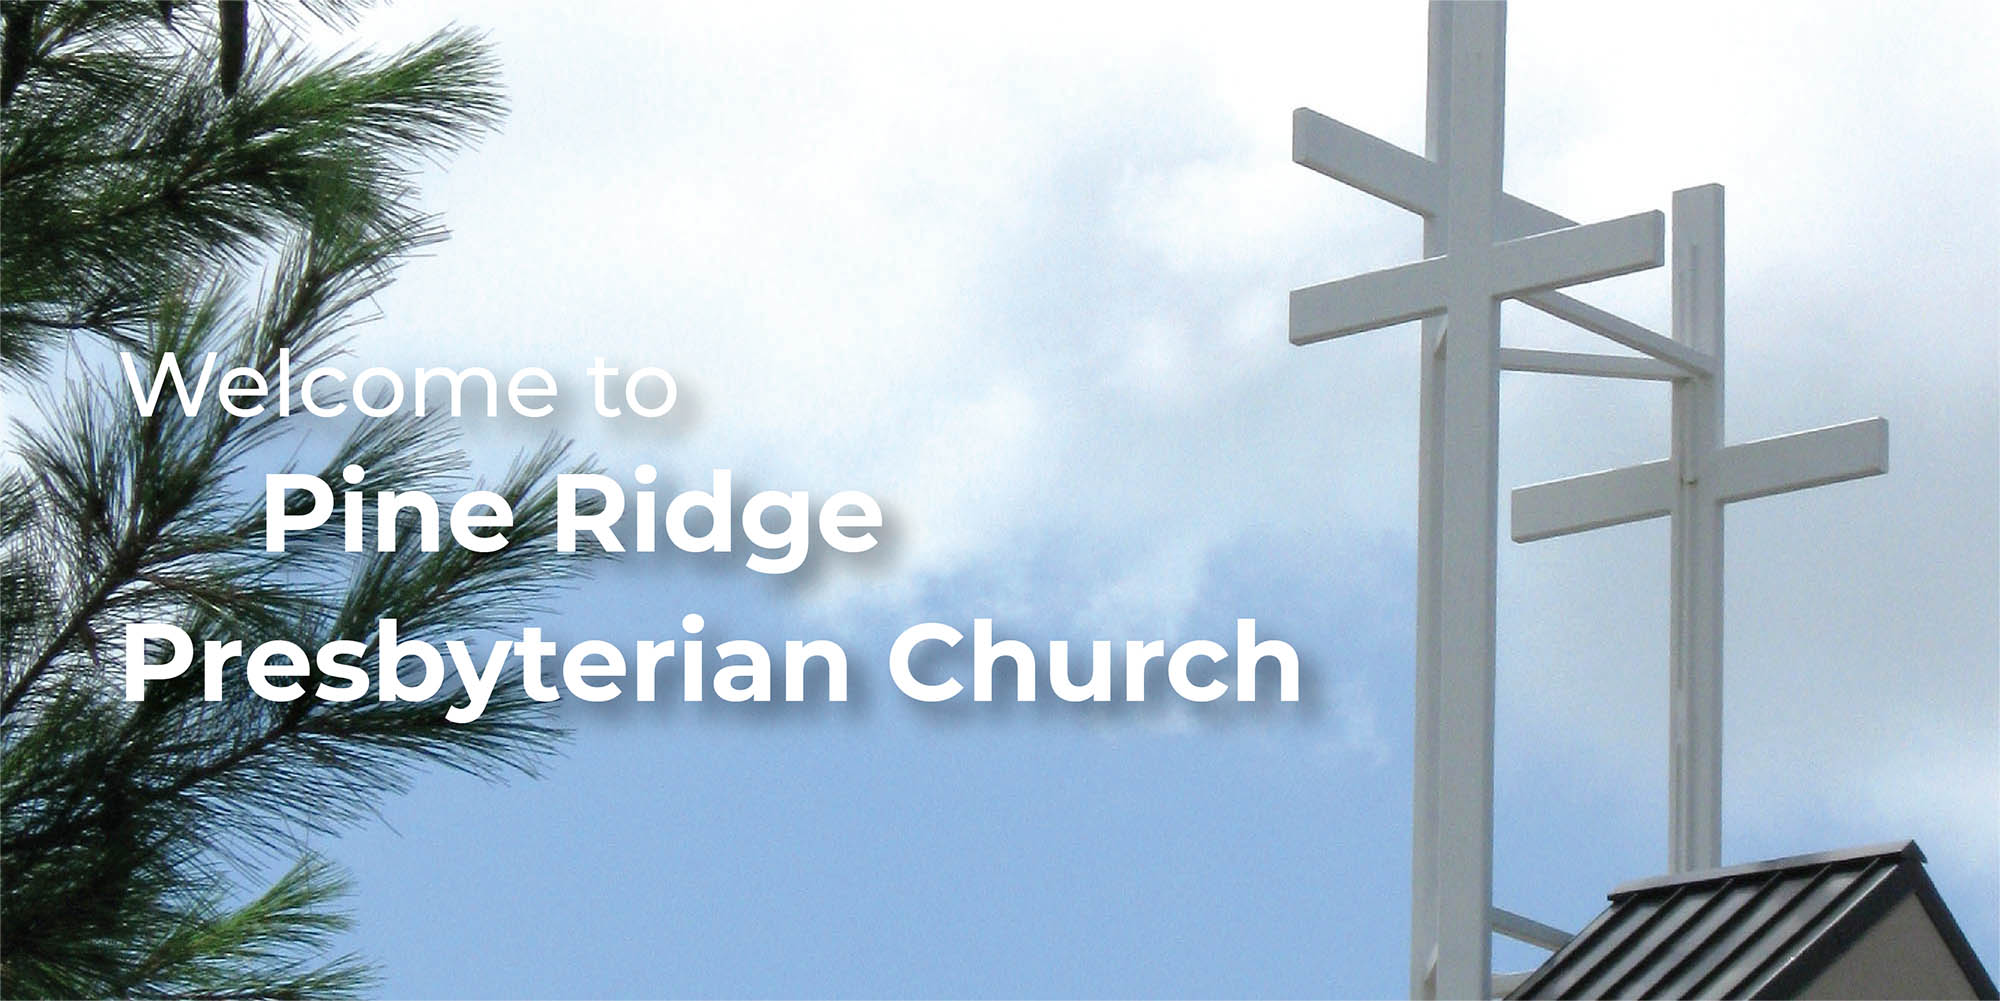 Pine Ridge Presbyterian Church